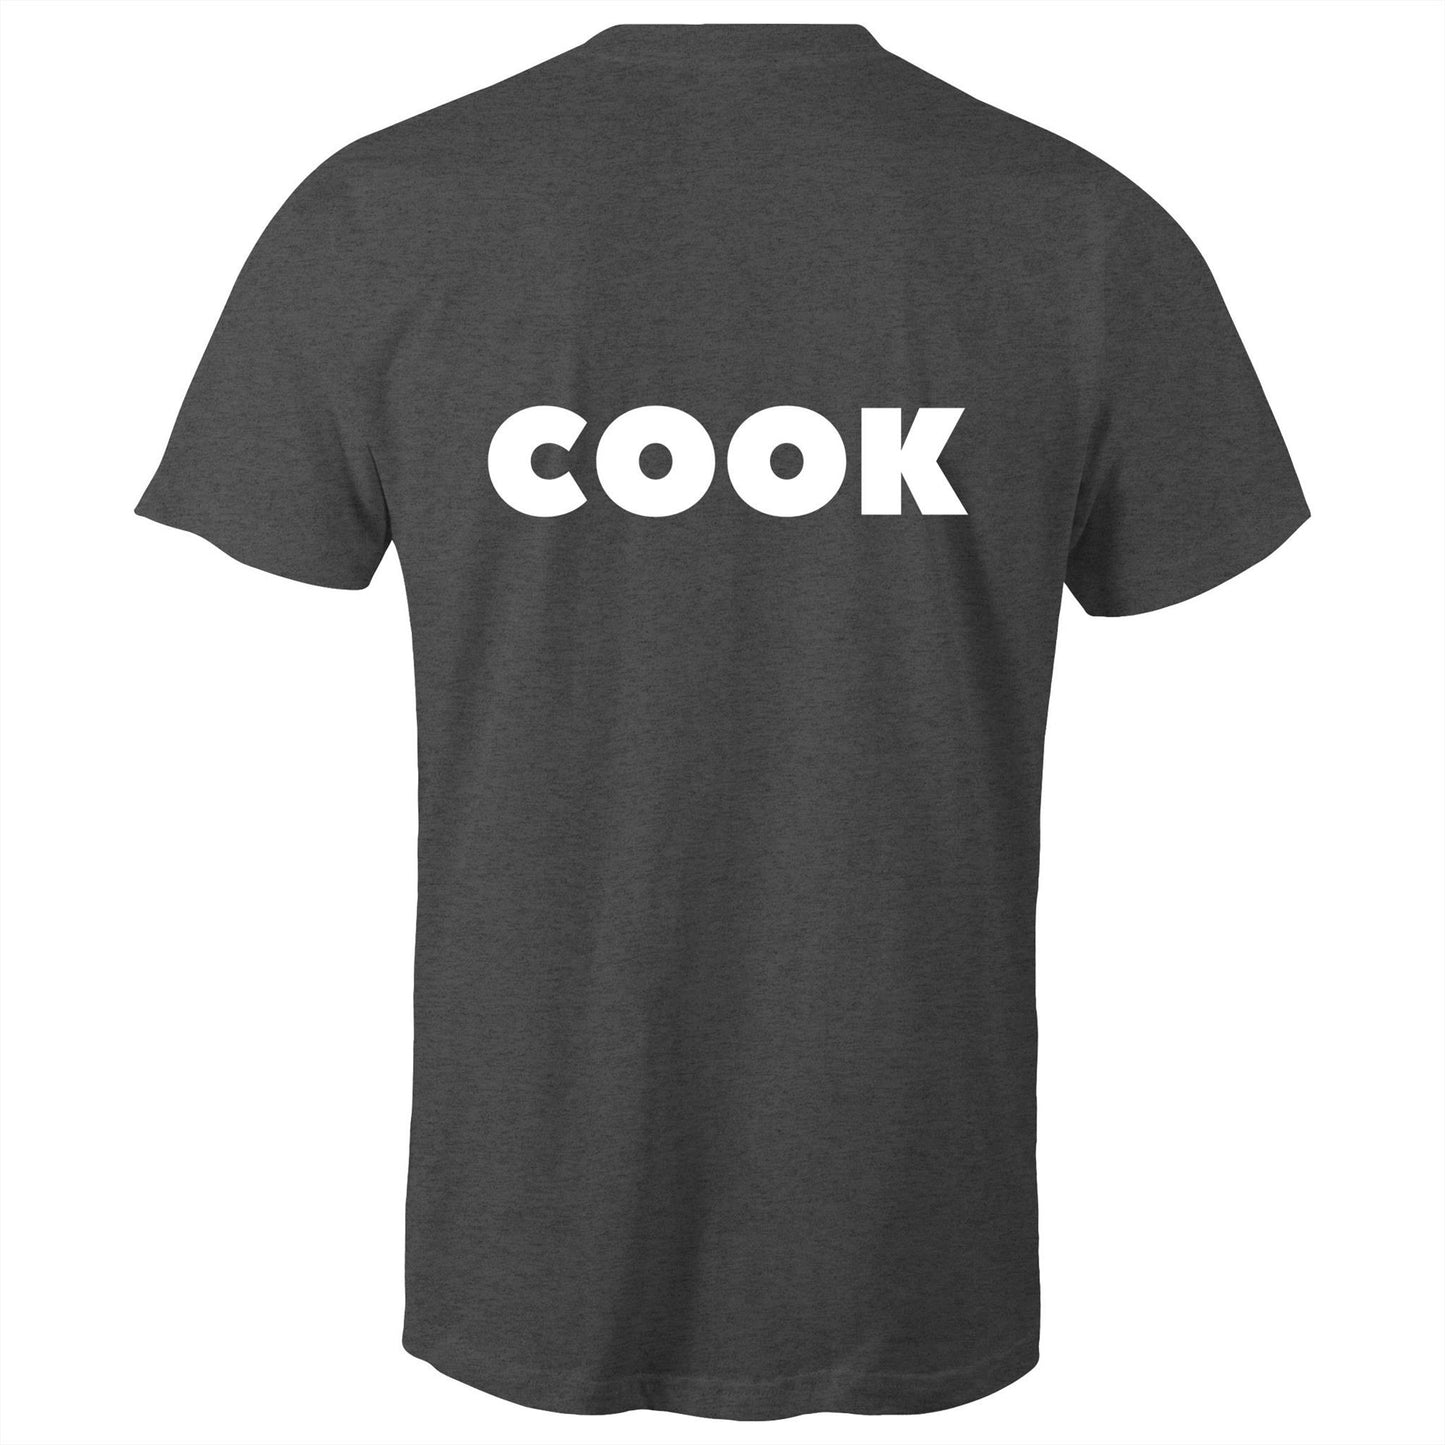 COOK- Unisex T-Shirt